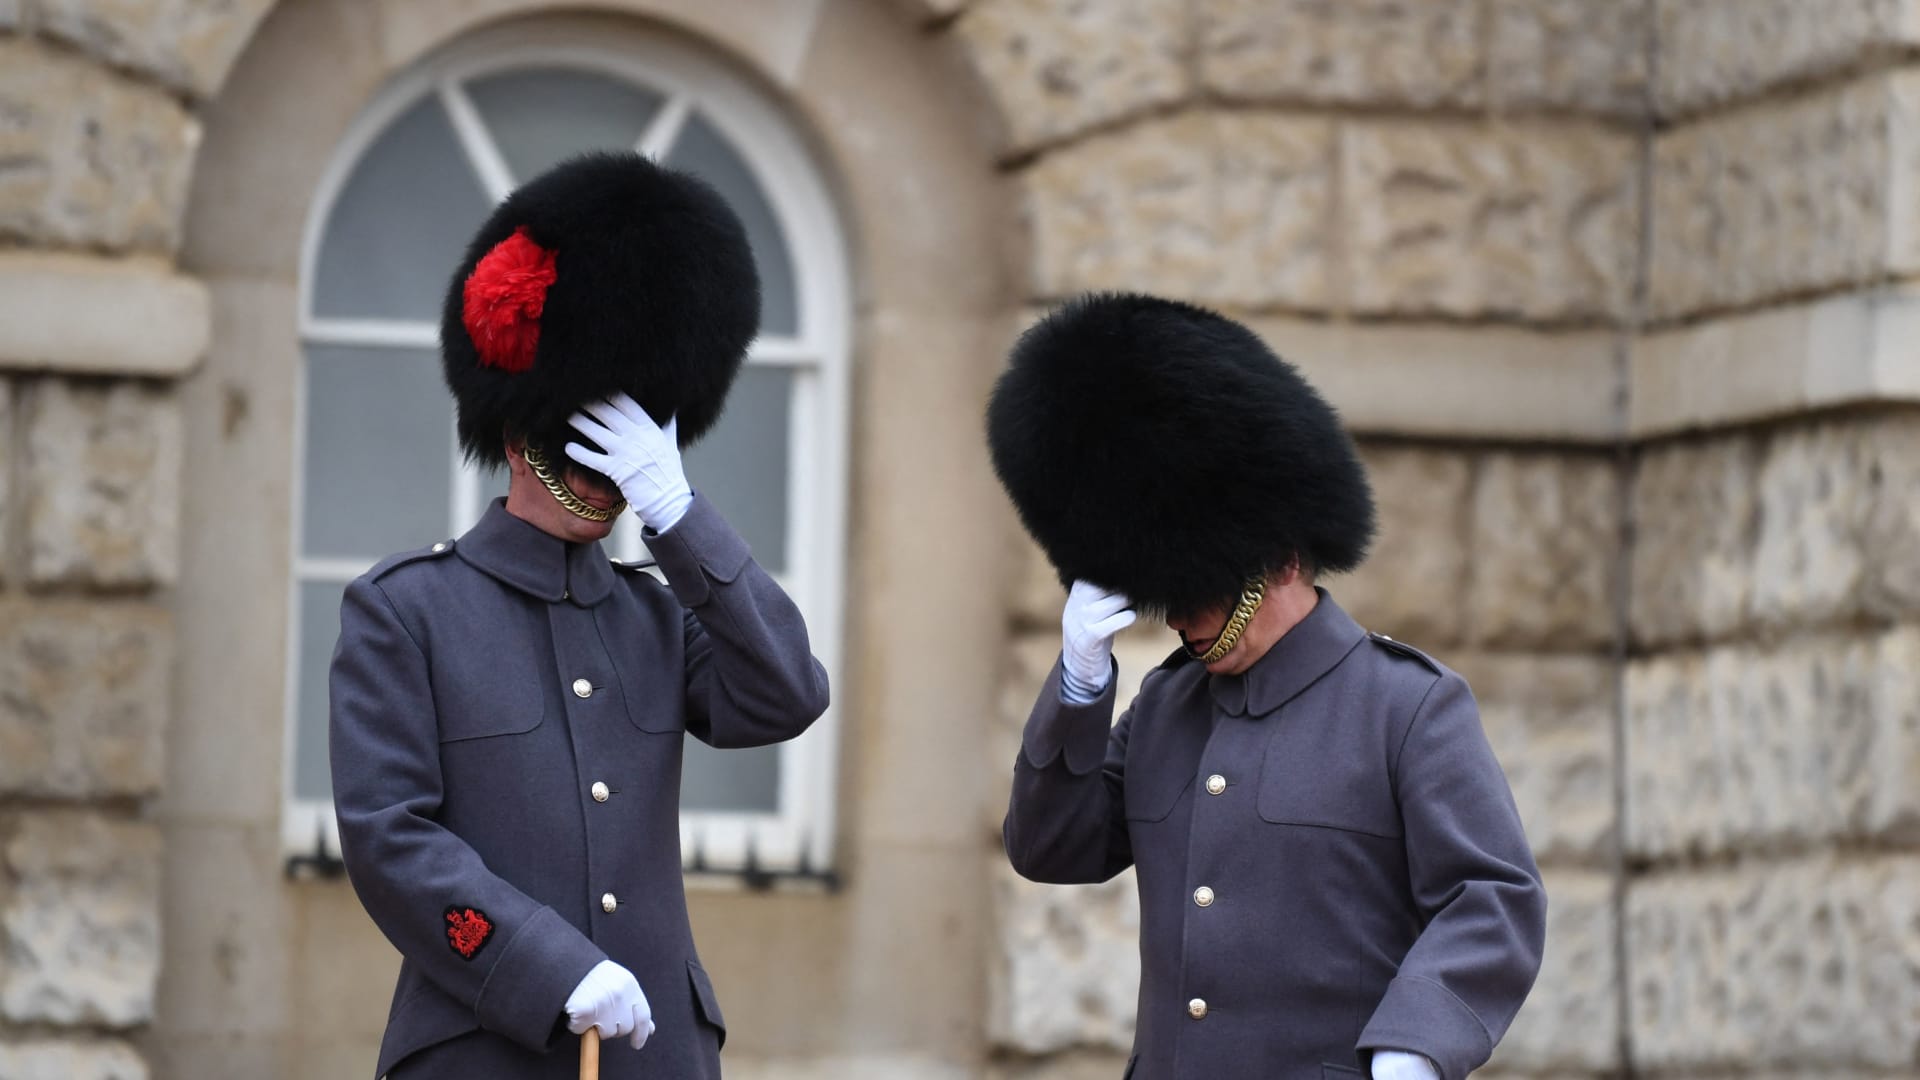 الحرس الملكي "آسف" بعد فيديو أظهر حارسًا يدوس طفلا في لندن